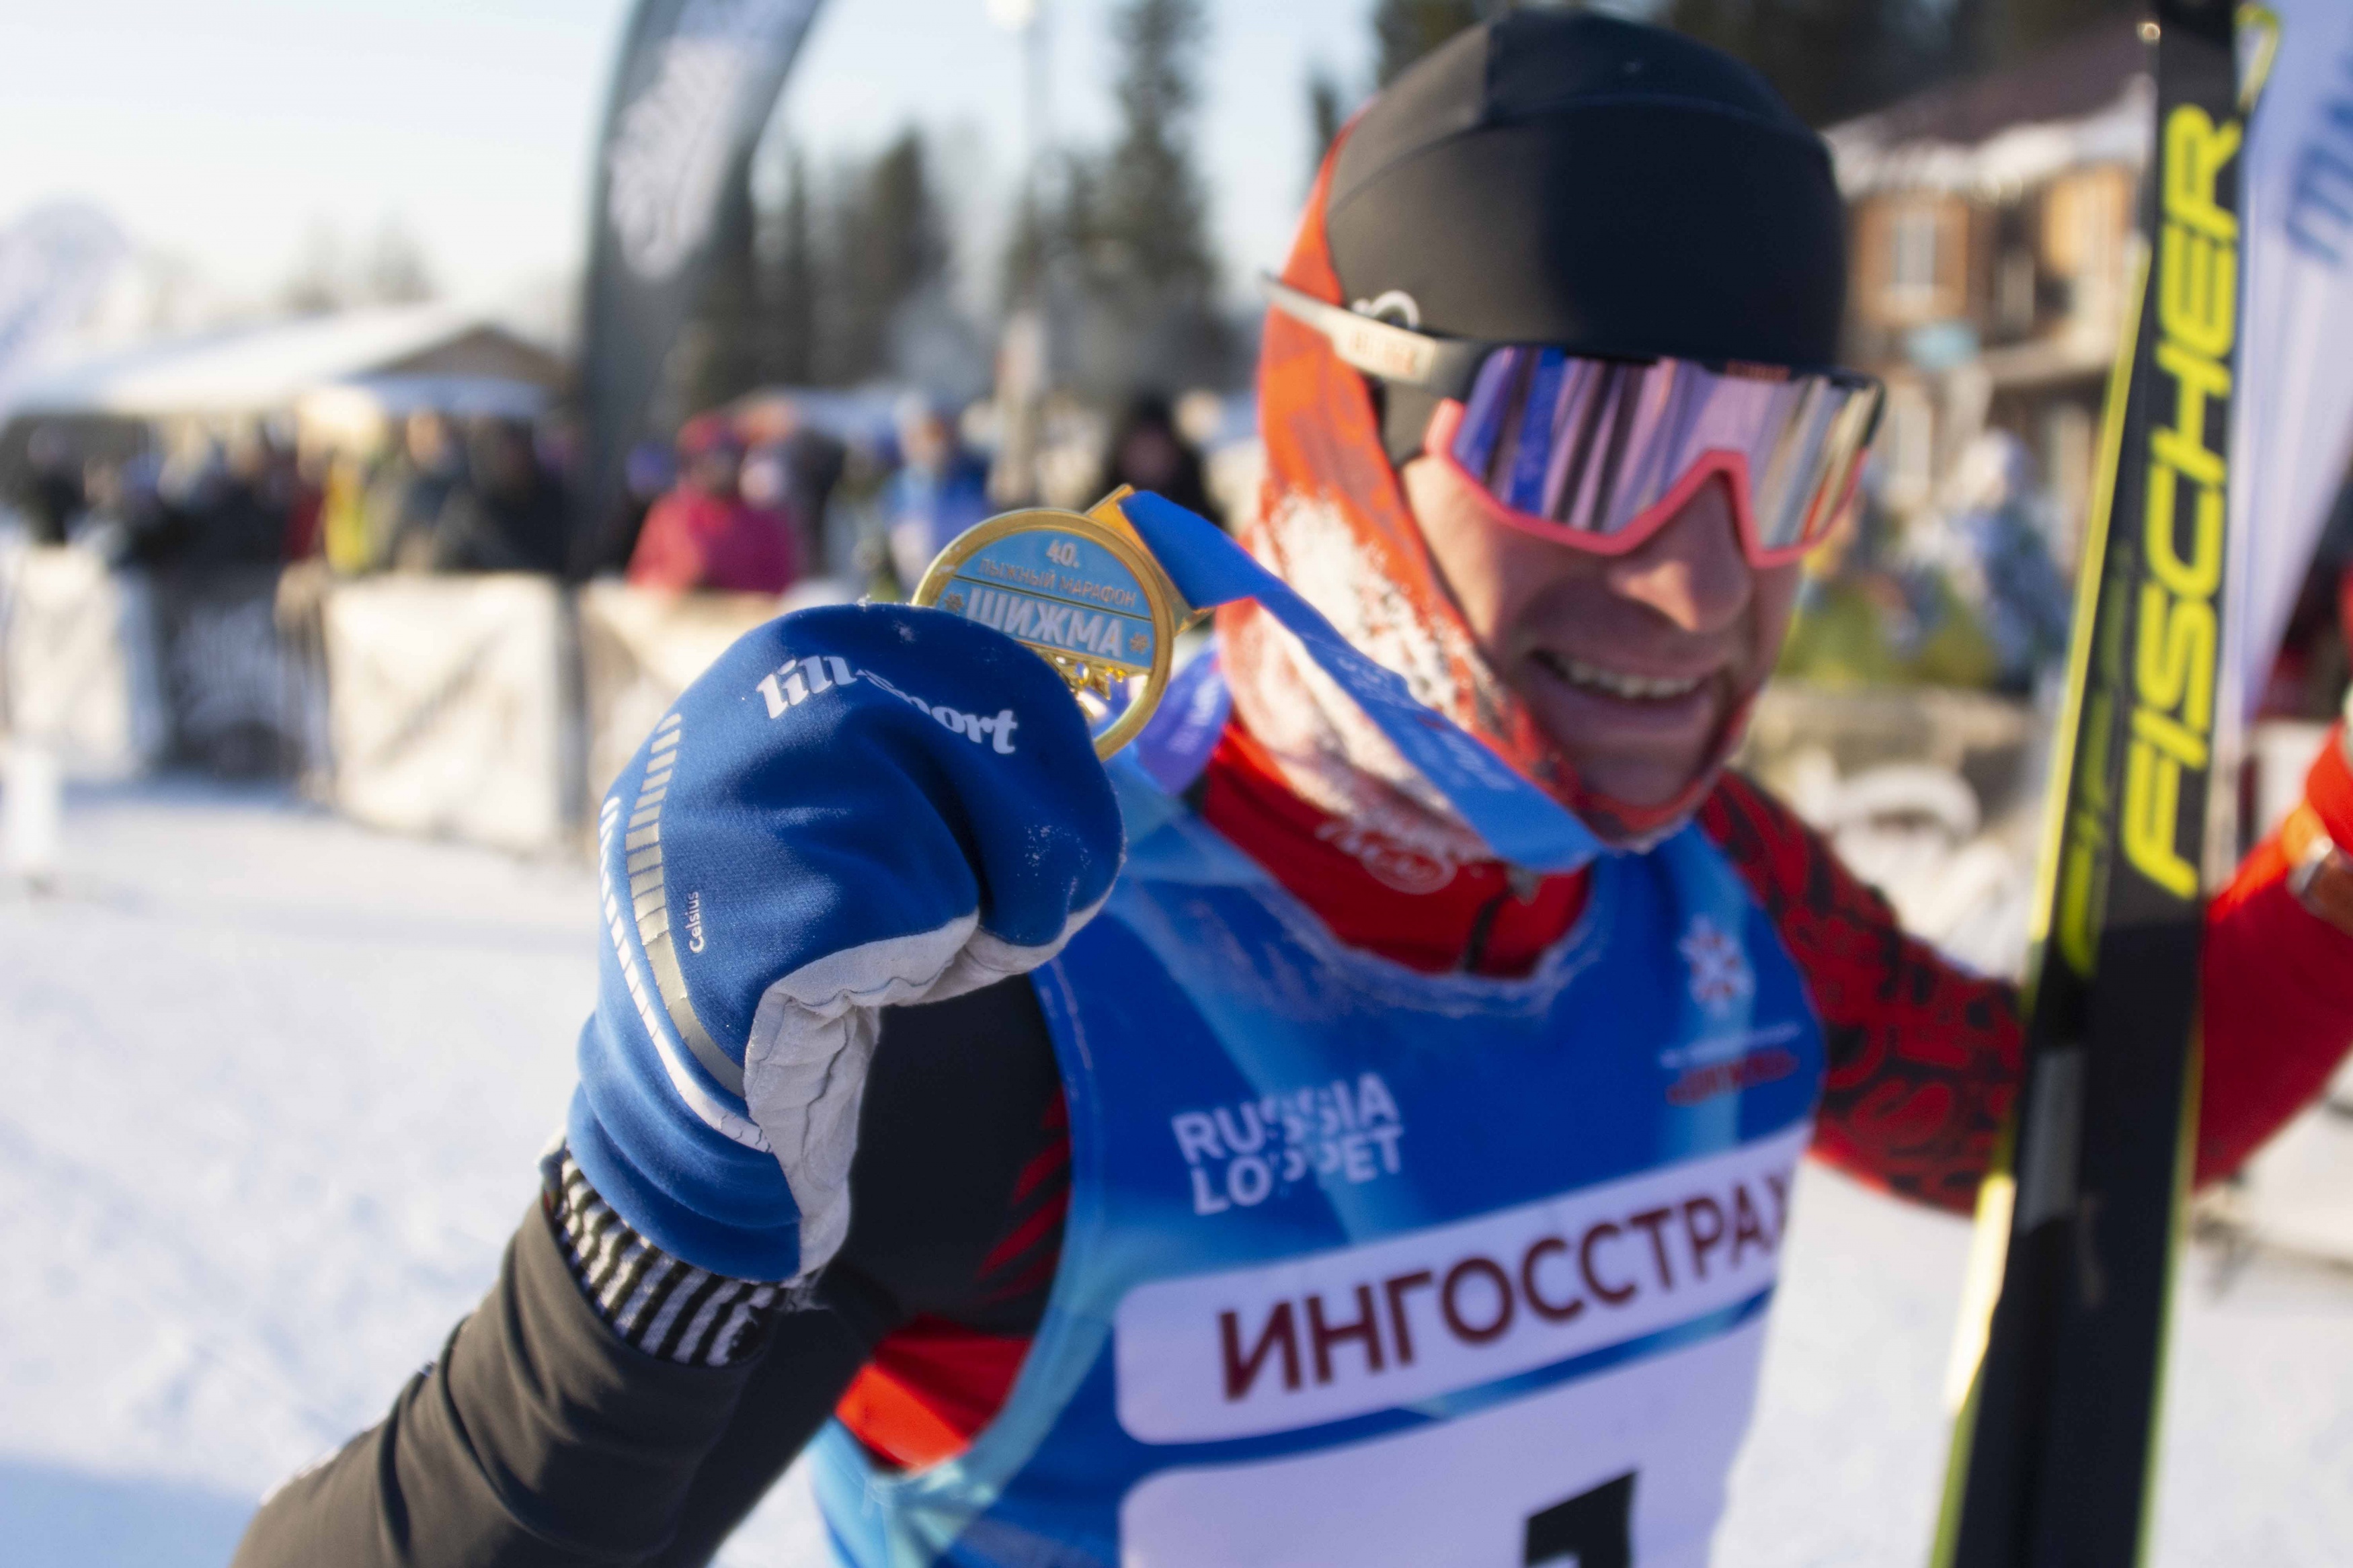 Лыжный марафон Шижма - первый старт зимнего сезона 2020-2021